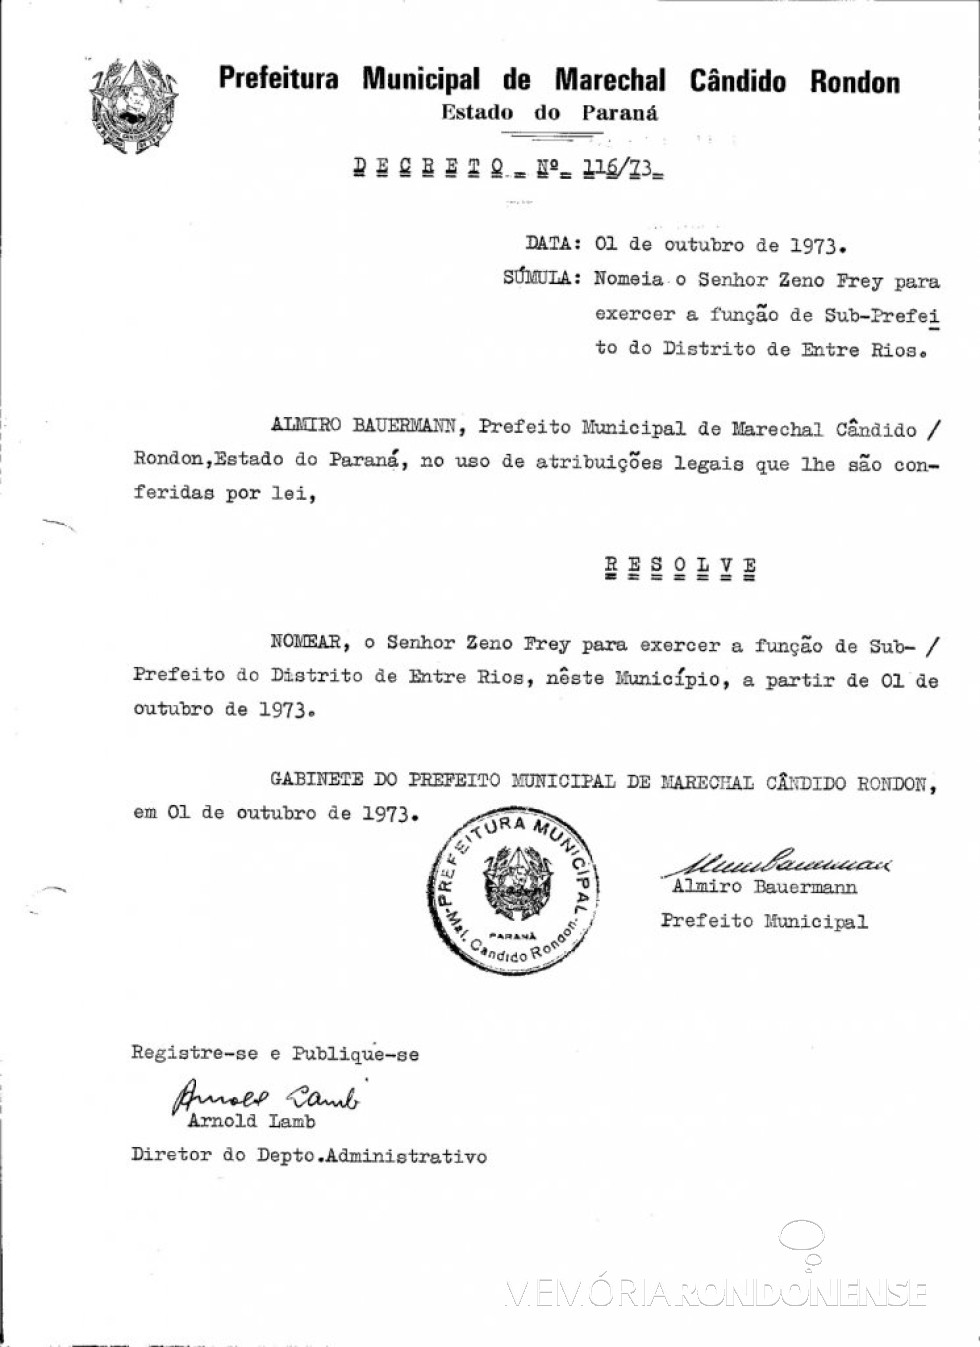 || Decreto de nomeação de Zeno Frey para as funções de subprefeito de Entre Rios.
Imagem: Acervo Prefeitura Municipal de Marechal Cândido Rondon - FOTO 6 -